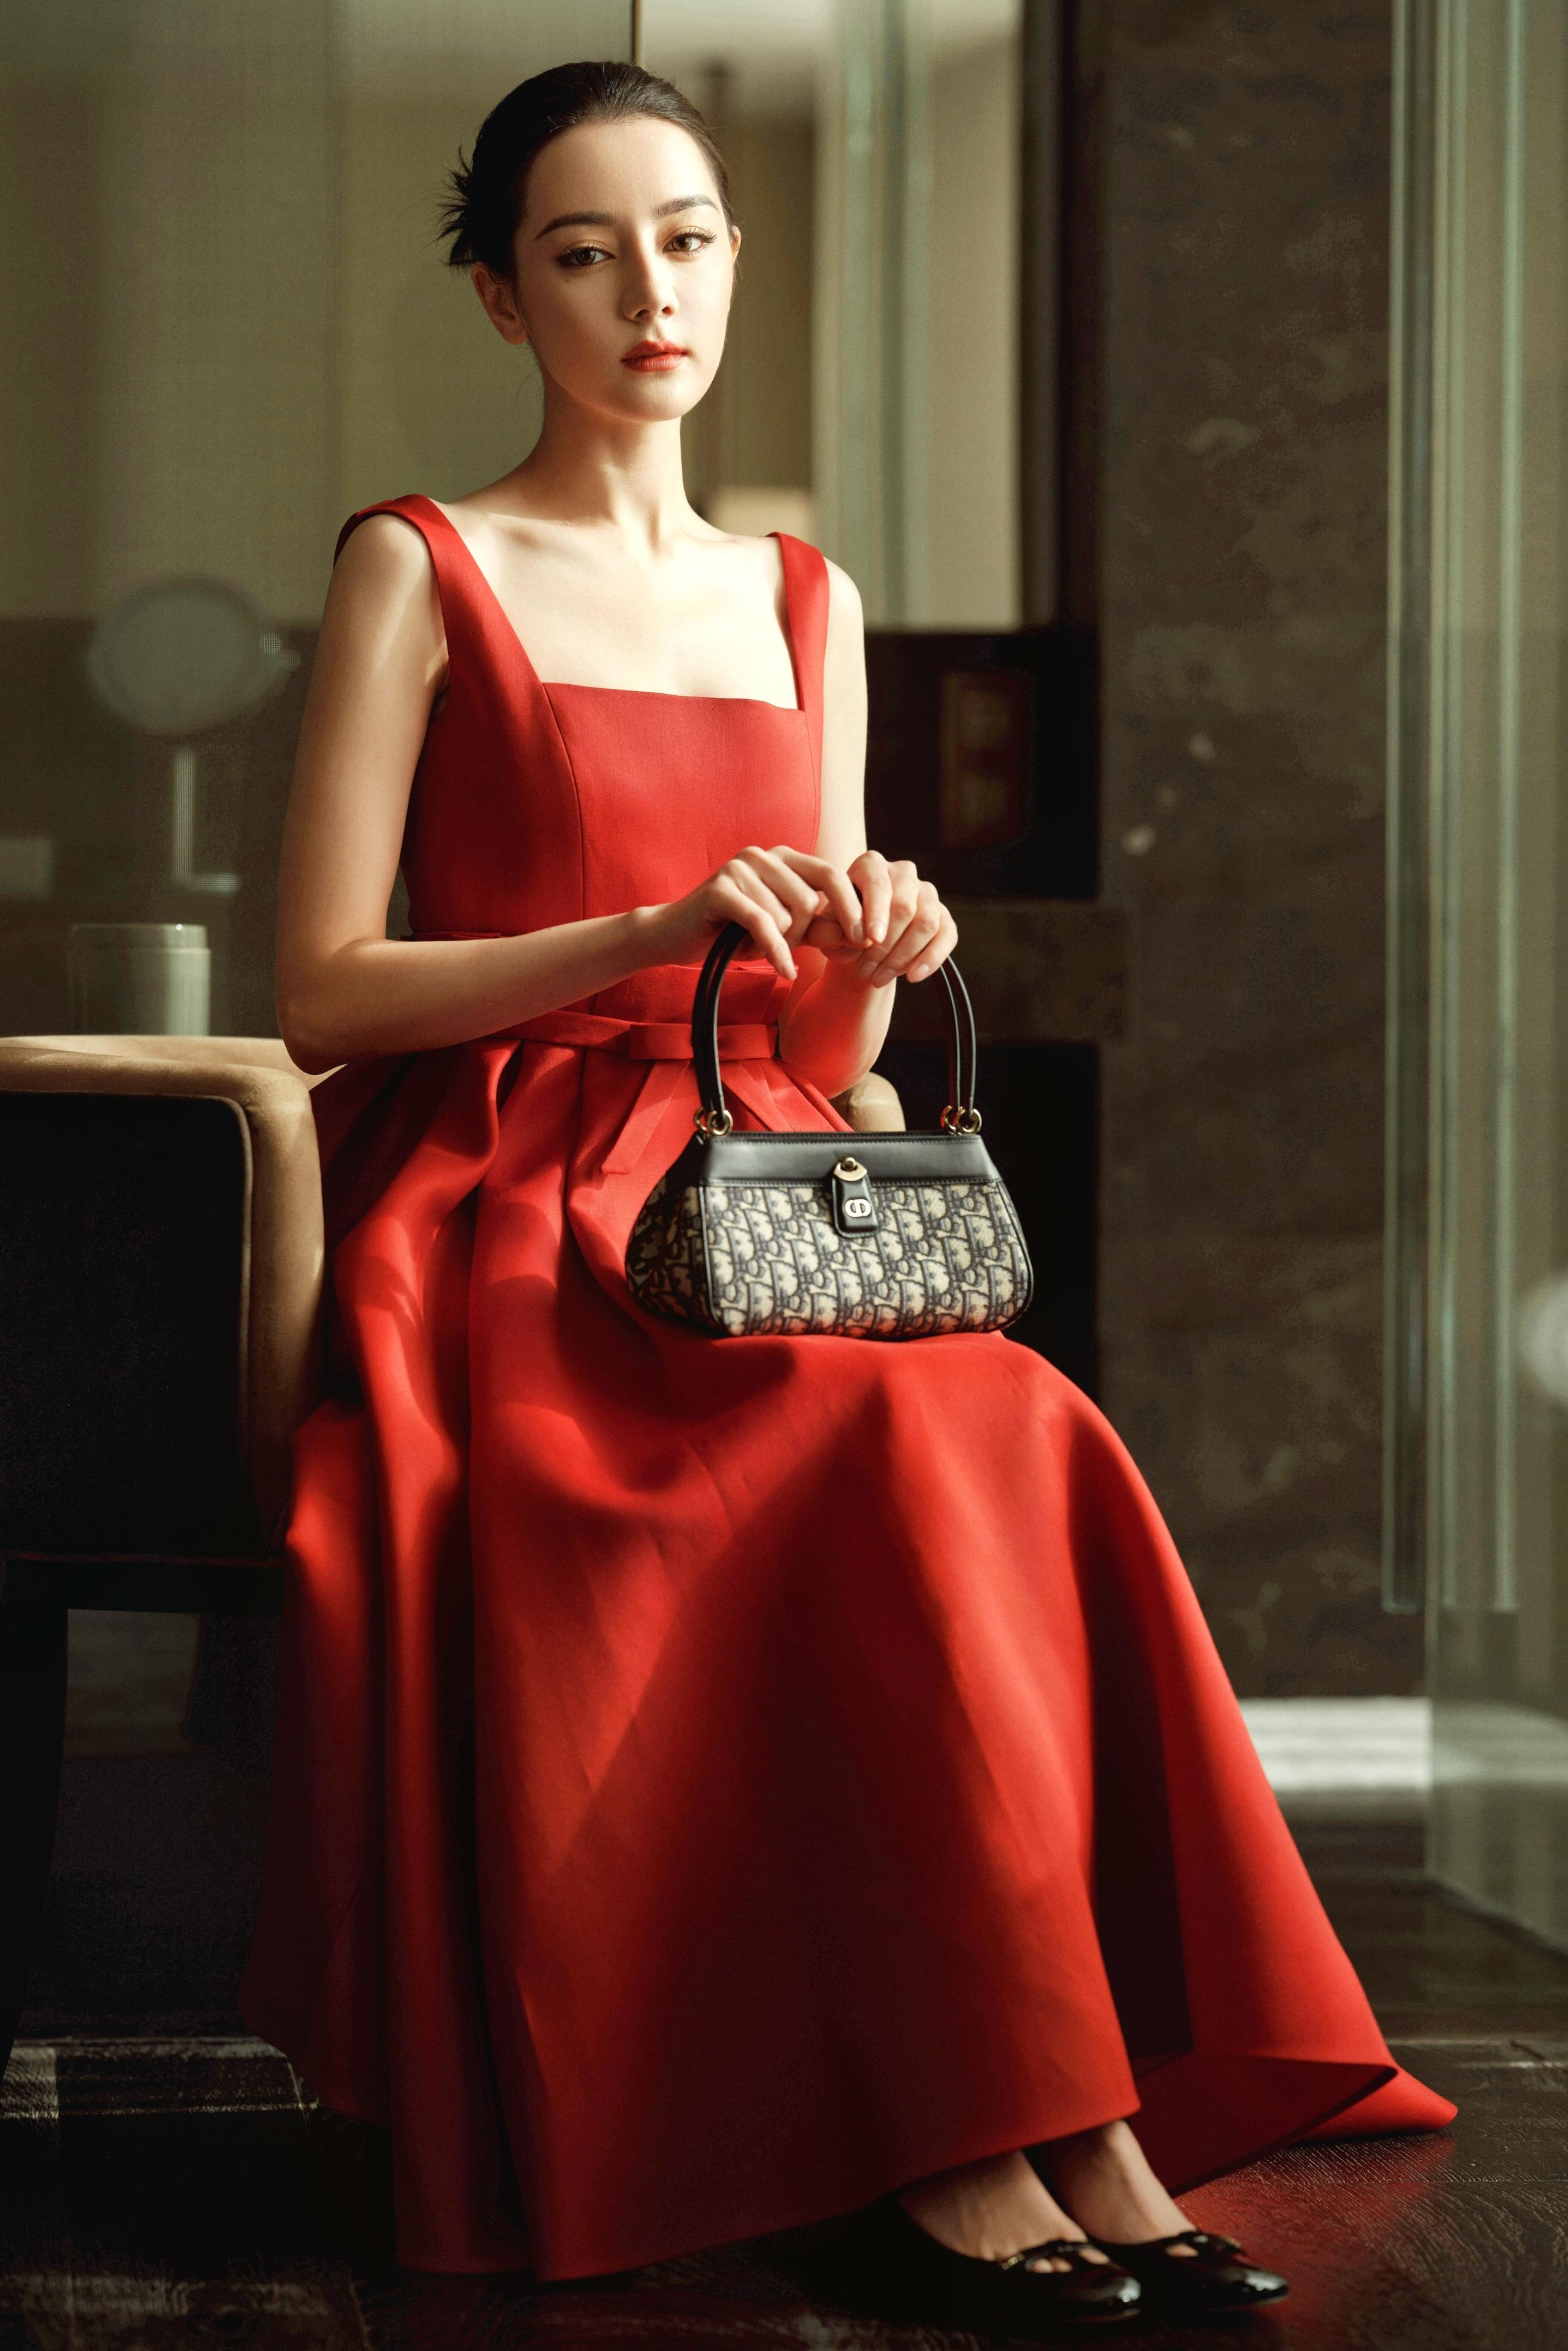 迪丽热巴红裙造型优雅自得 随意舞动裙角举止间尽显魅力,1 (1)